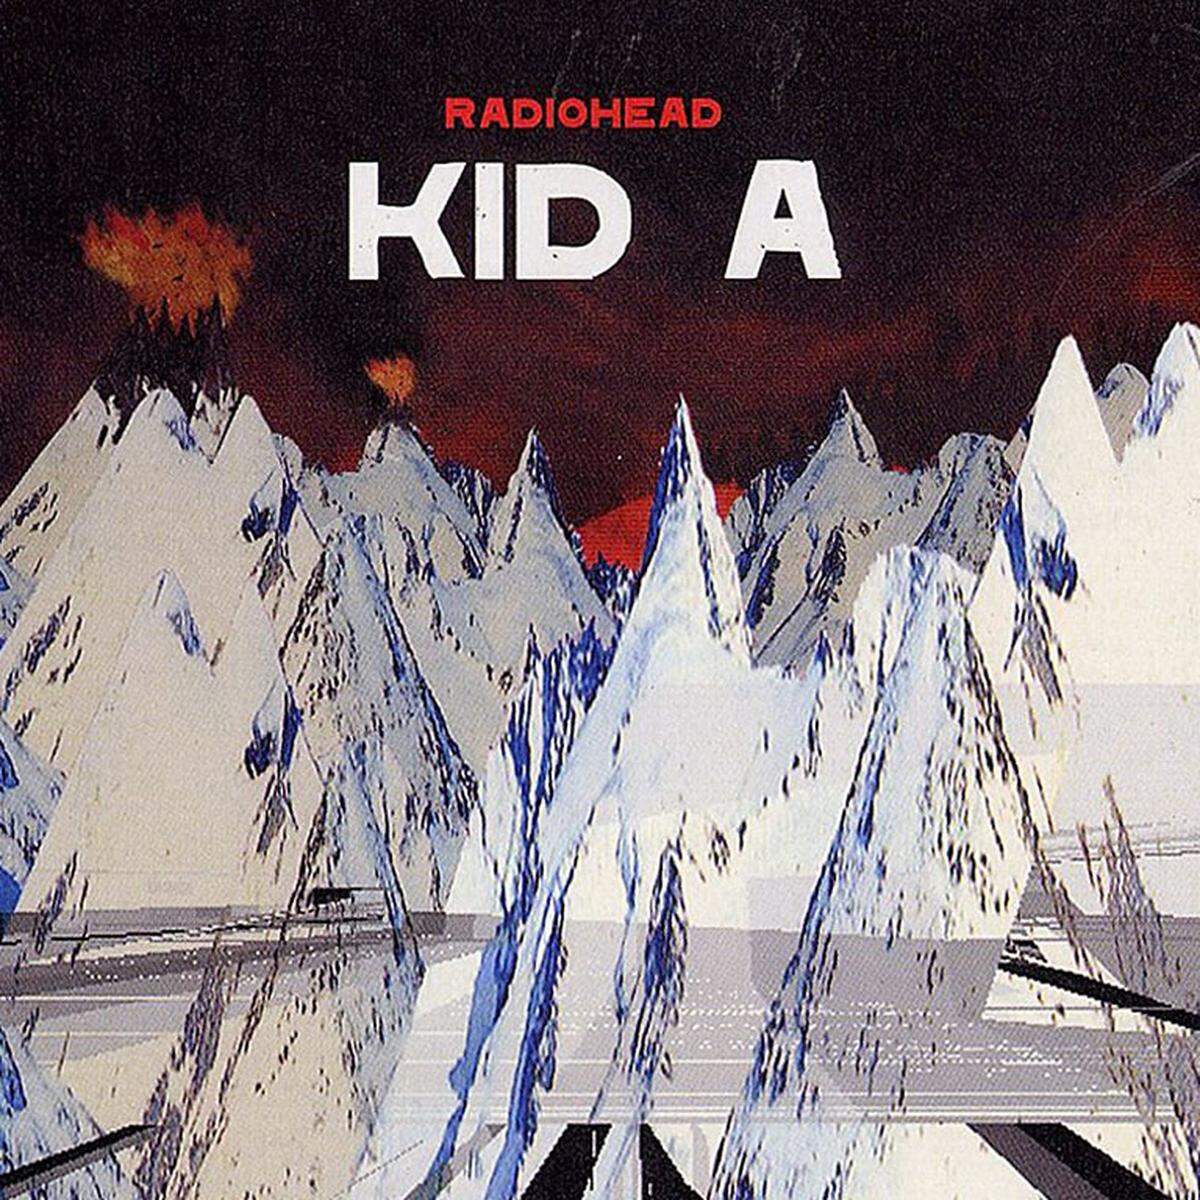 Mit "Kid A" (2000) machten Radiohead einen Strich durch die Indie-Rechnung. Das sperrige, elektronische Werk polarisierte am Beginn des neuen Milleniums. Uns hat es überzeugt.